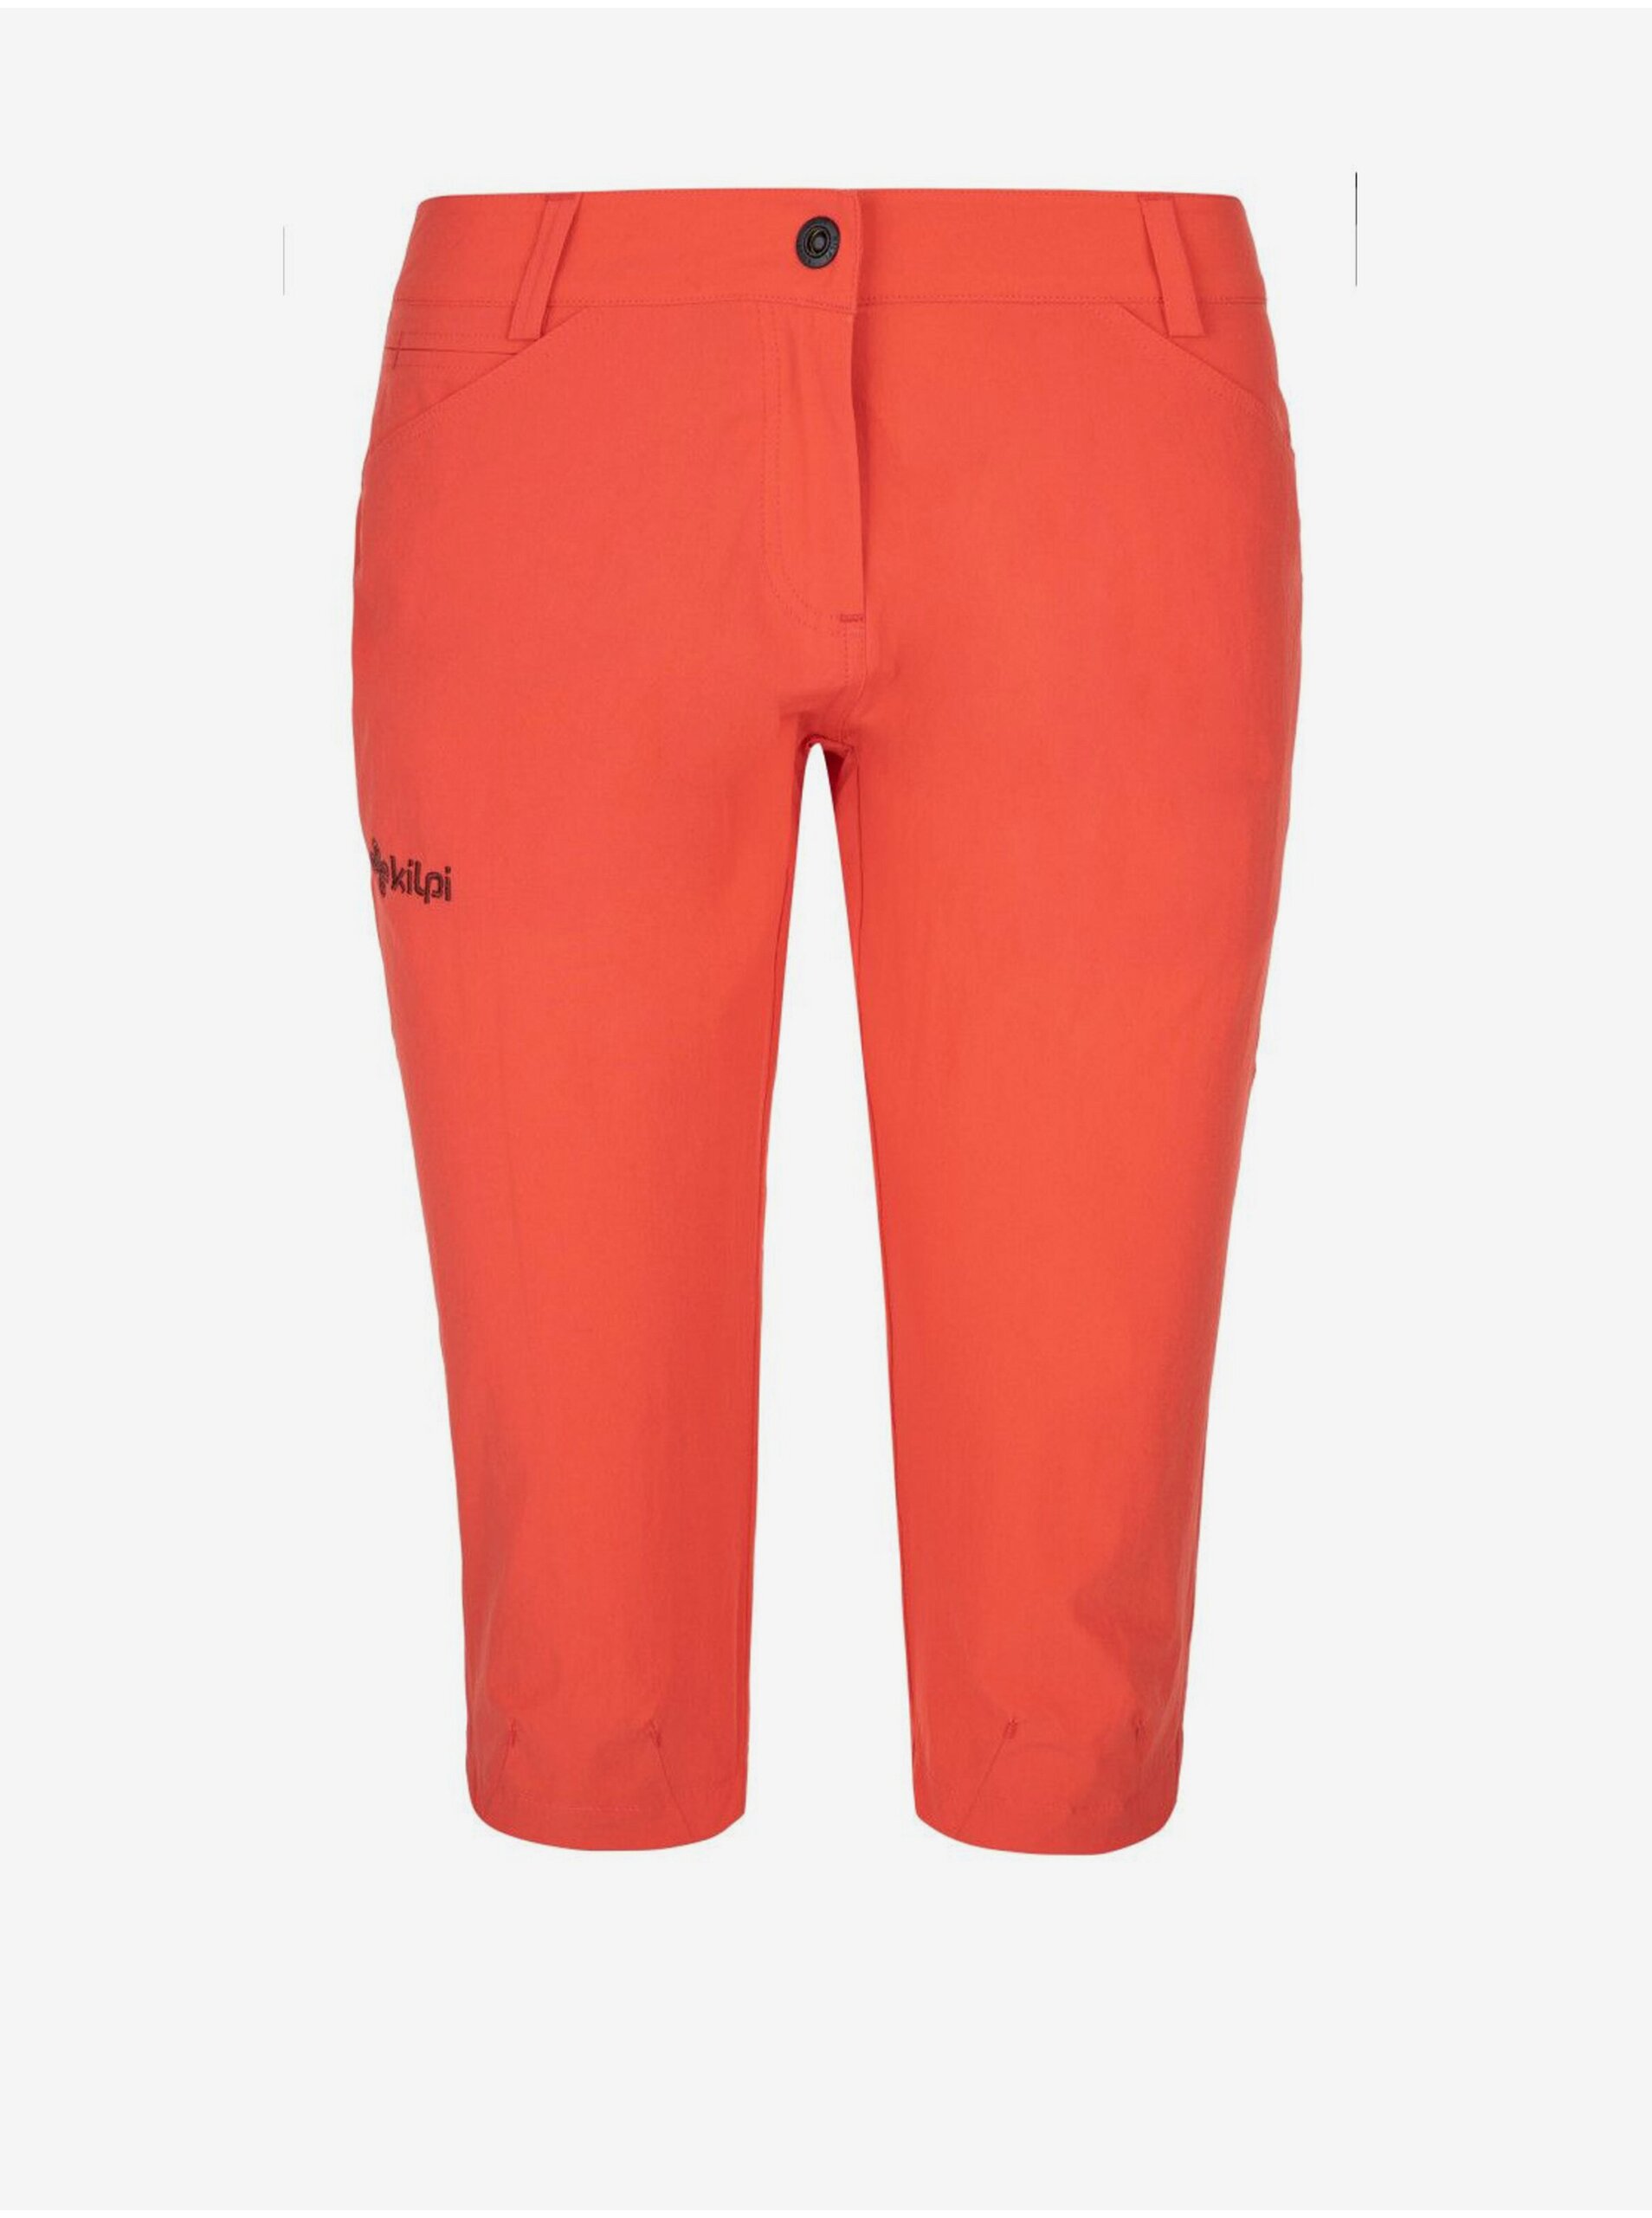 E-shop Korálové dámské sportovní tříčtvrteční kalhoty Kilpi TRENTA